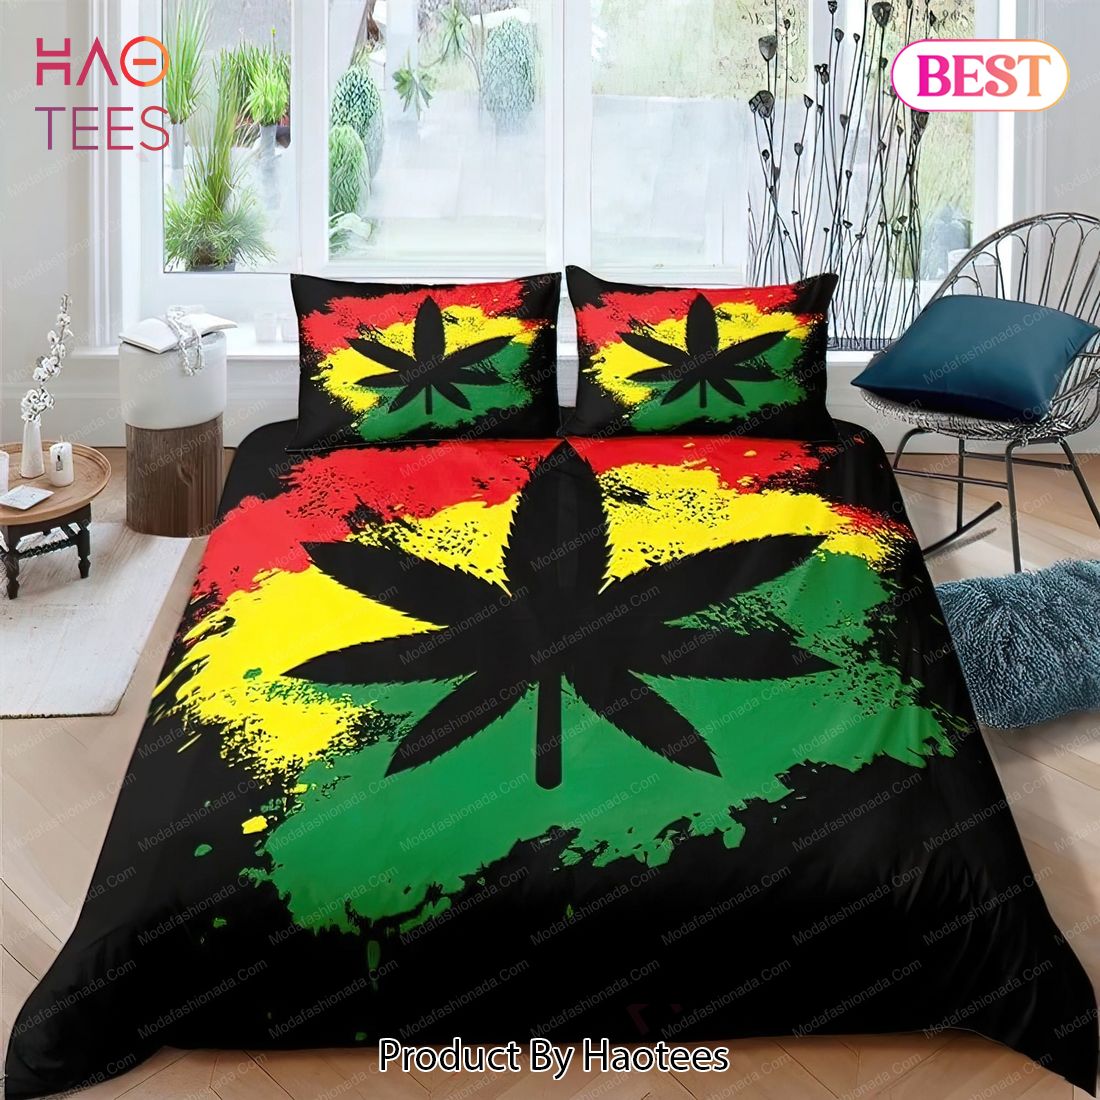 Buy Marijuana Leaf Botanical Weed Hemp Bedding Sets Bed Sets, Bedroom Sets, Comforter Sets, Duvet Cover, Bedspread